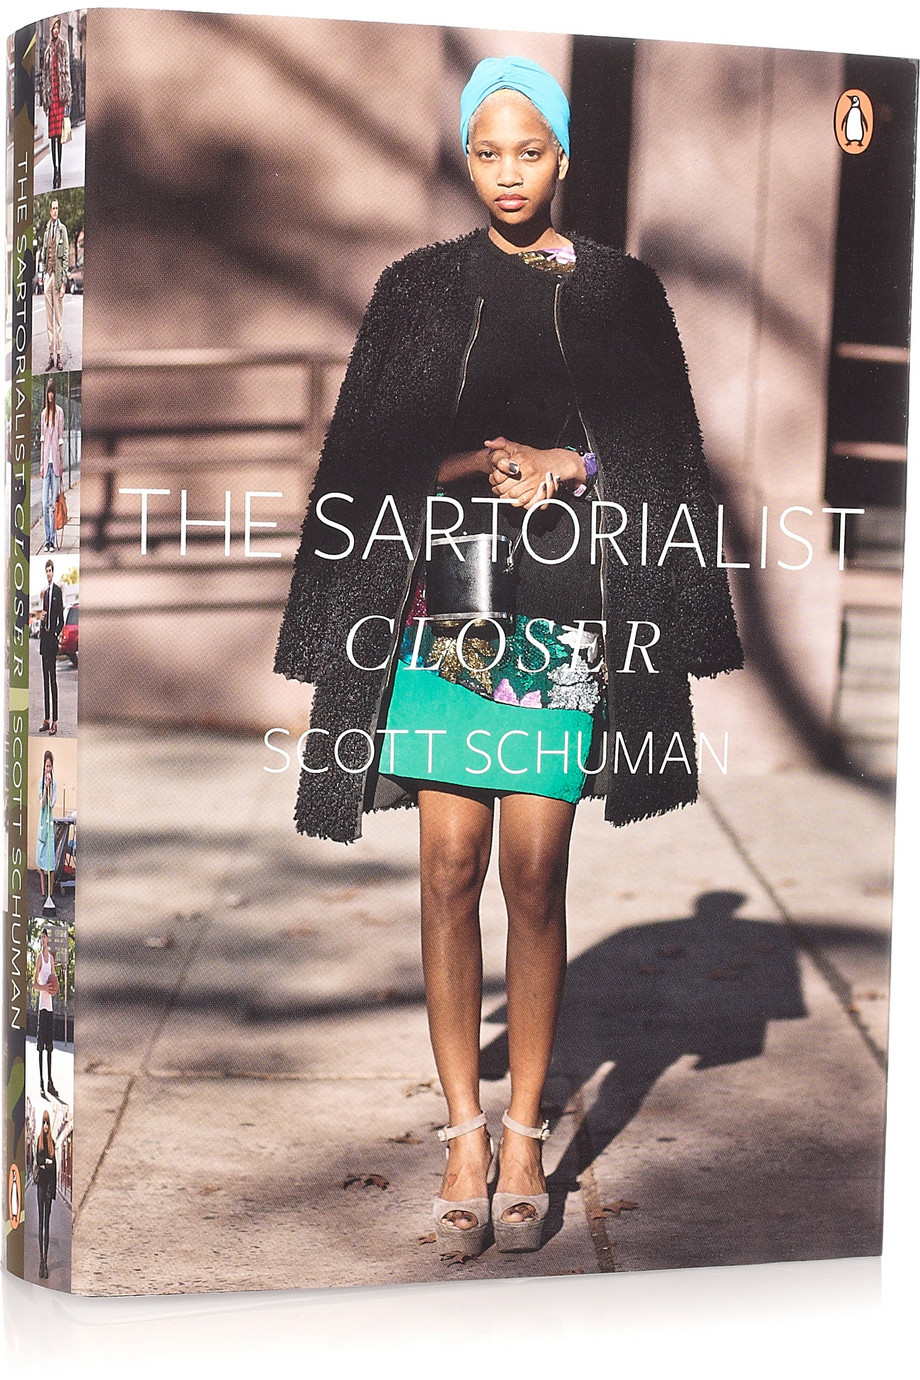 The Sartorialist Closer by Scott Schumann Book Cover